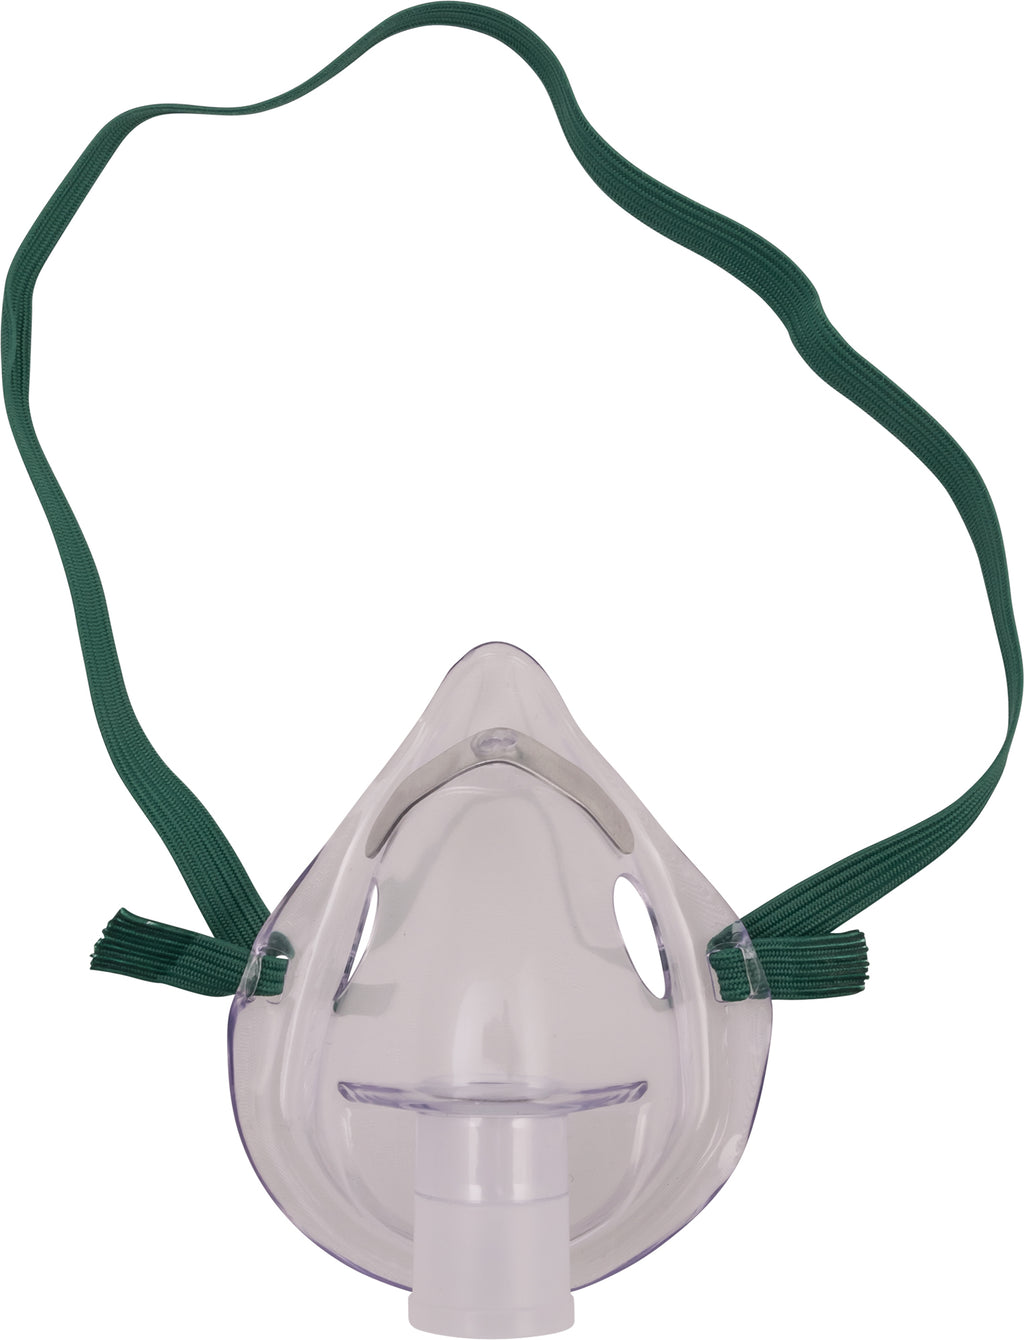 Pediatric Aerosol Mask TENSnet.com